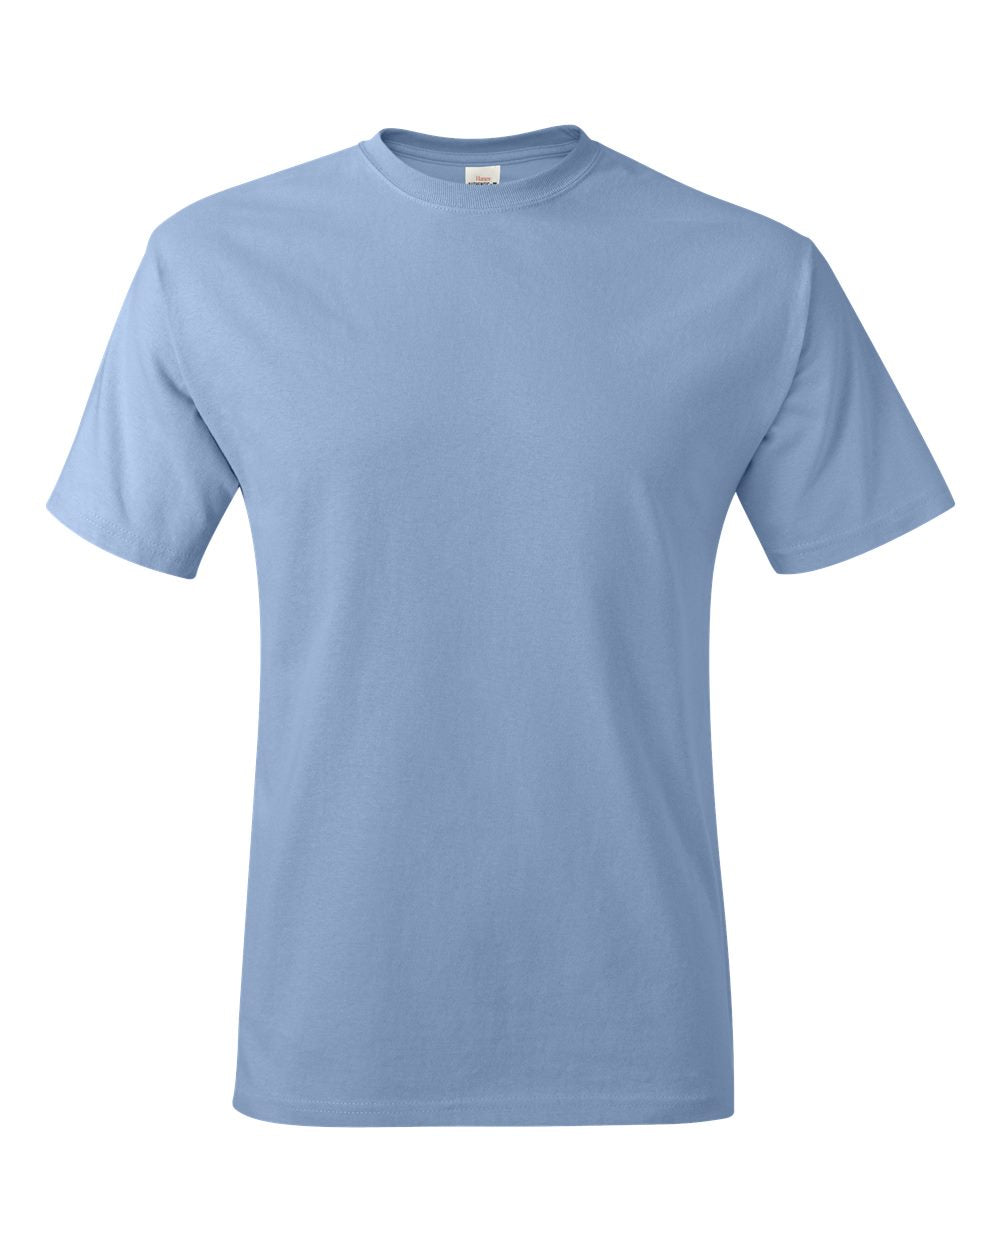 A Latitude Longitude T-Shirt